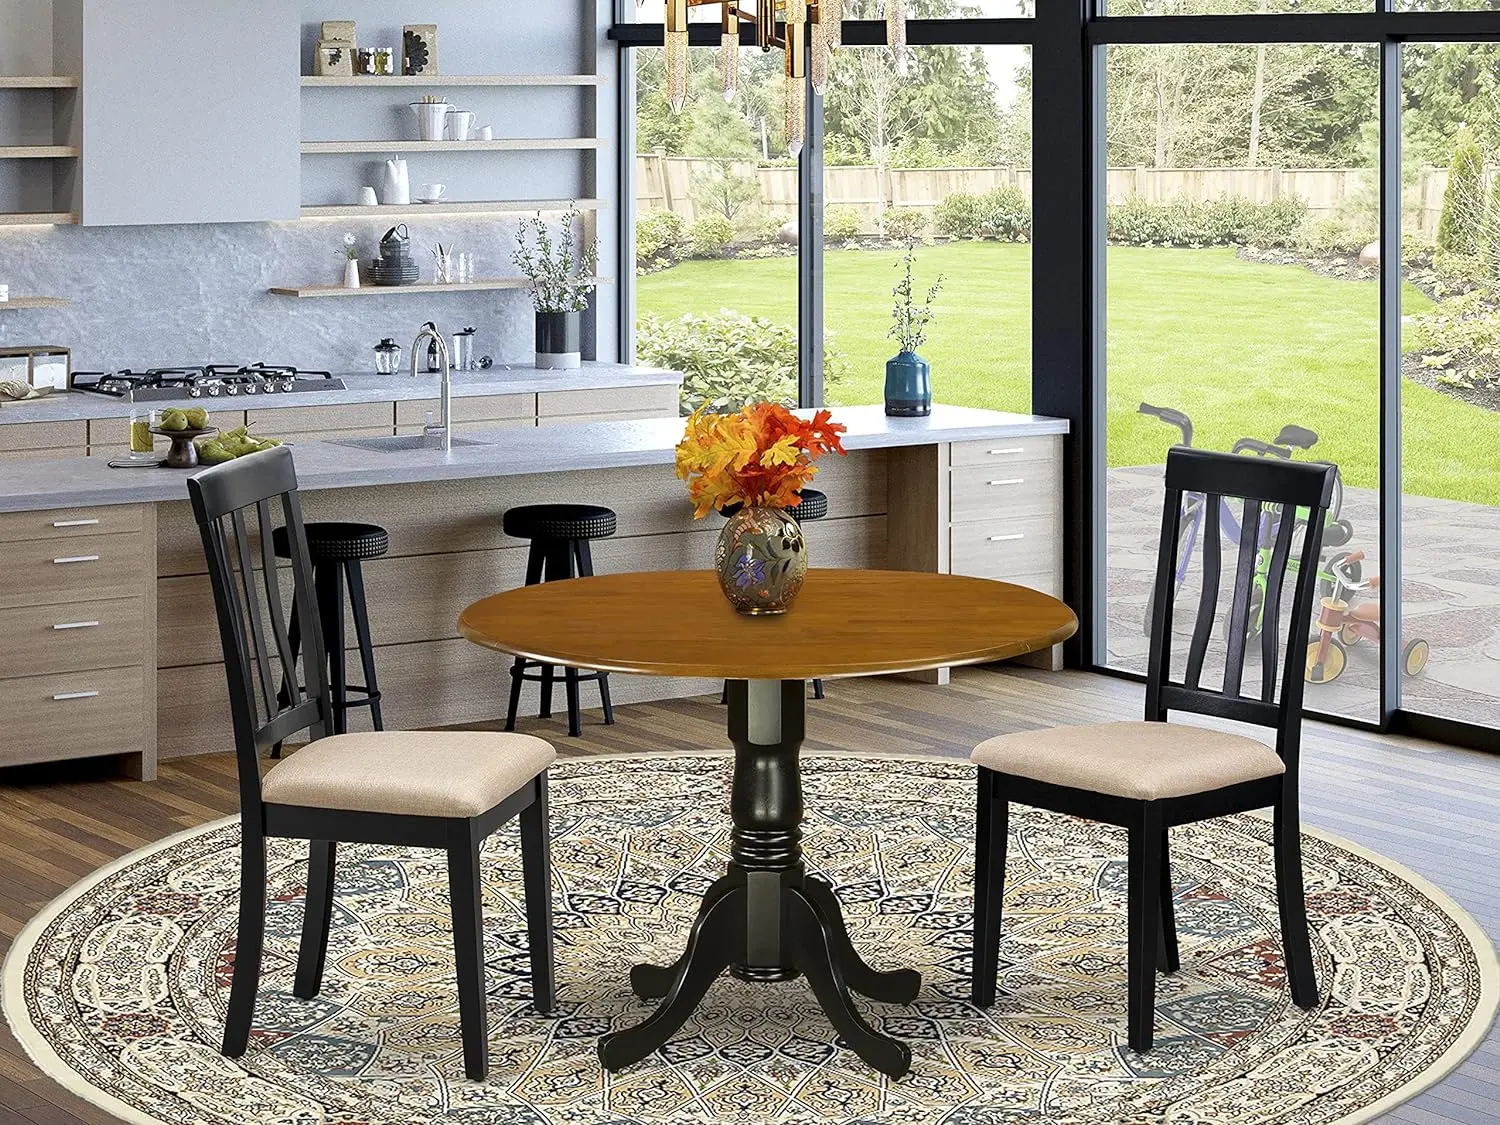 

East West Furniture DLAN3-BCH-C столовый стол для столовой из 3 предметов содержит круглый кухонный стол с подвижными складками